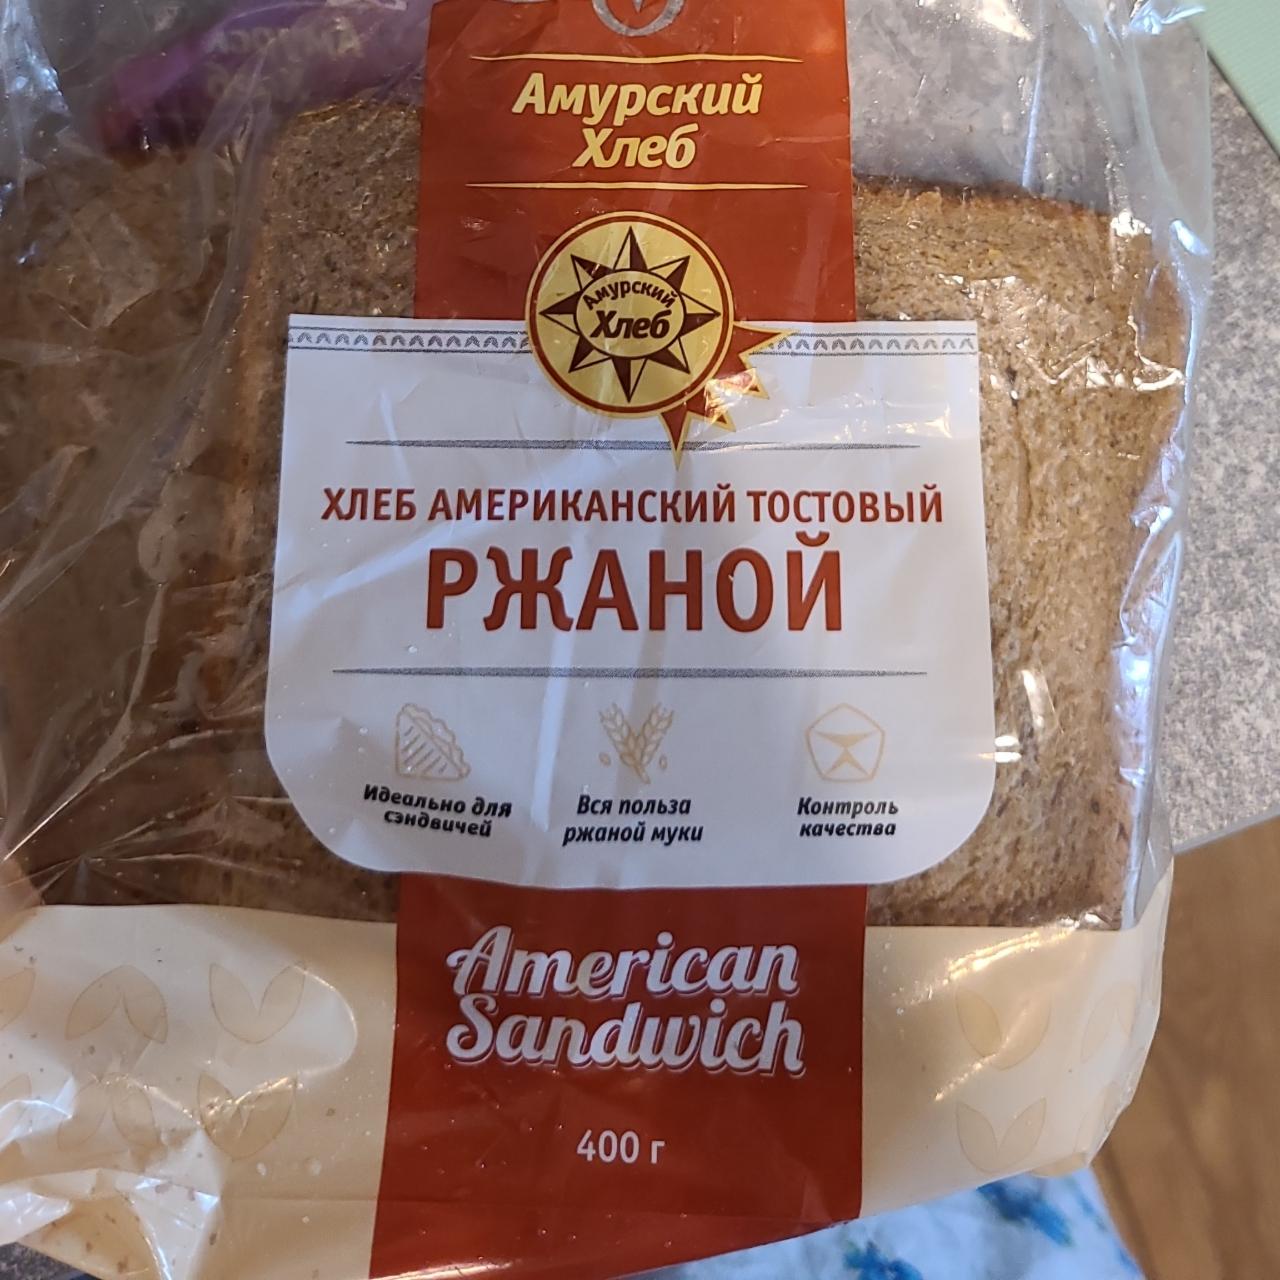 Фото - Хлеб американский тостовый ржаной Амурский хлеб